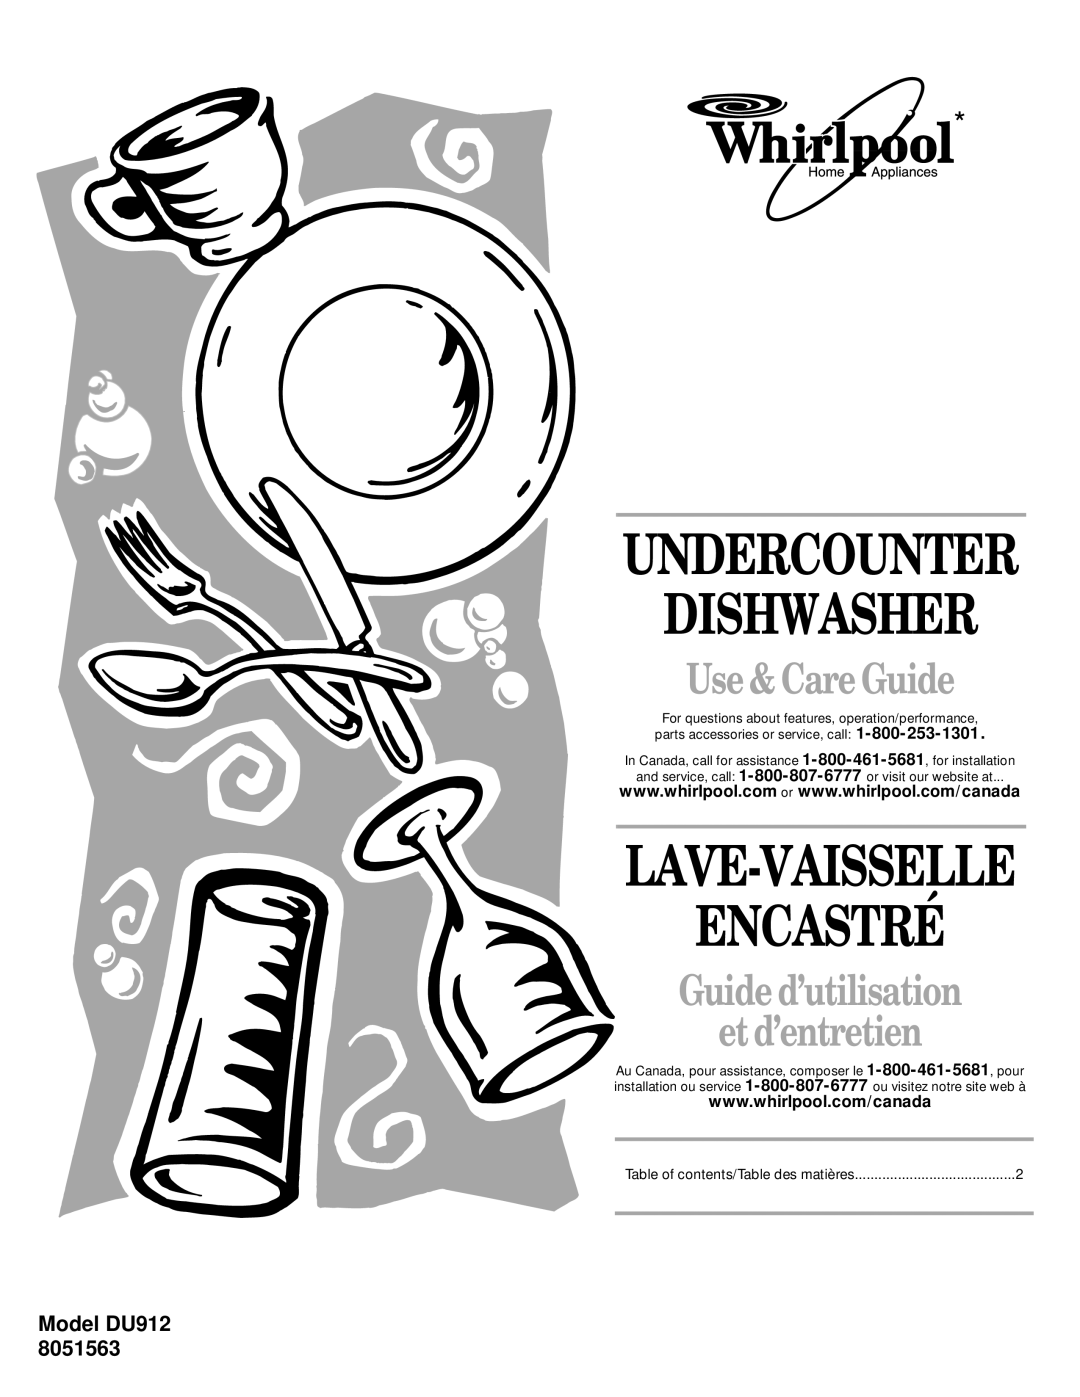 Whirlpool DU912 8051563 manual Dishwasher, Encastré, Undercounter, Lave-Vaisselle, Use& Care Guide, Model DU912 